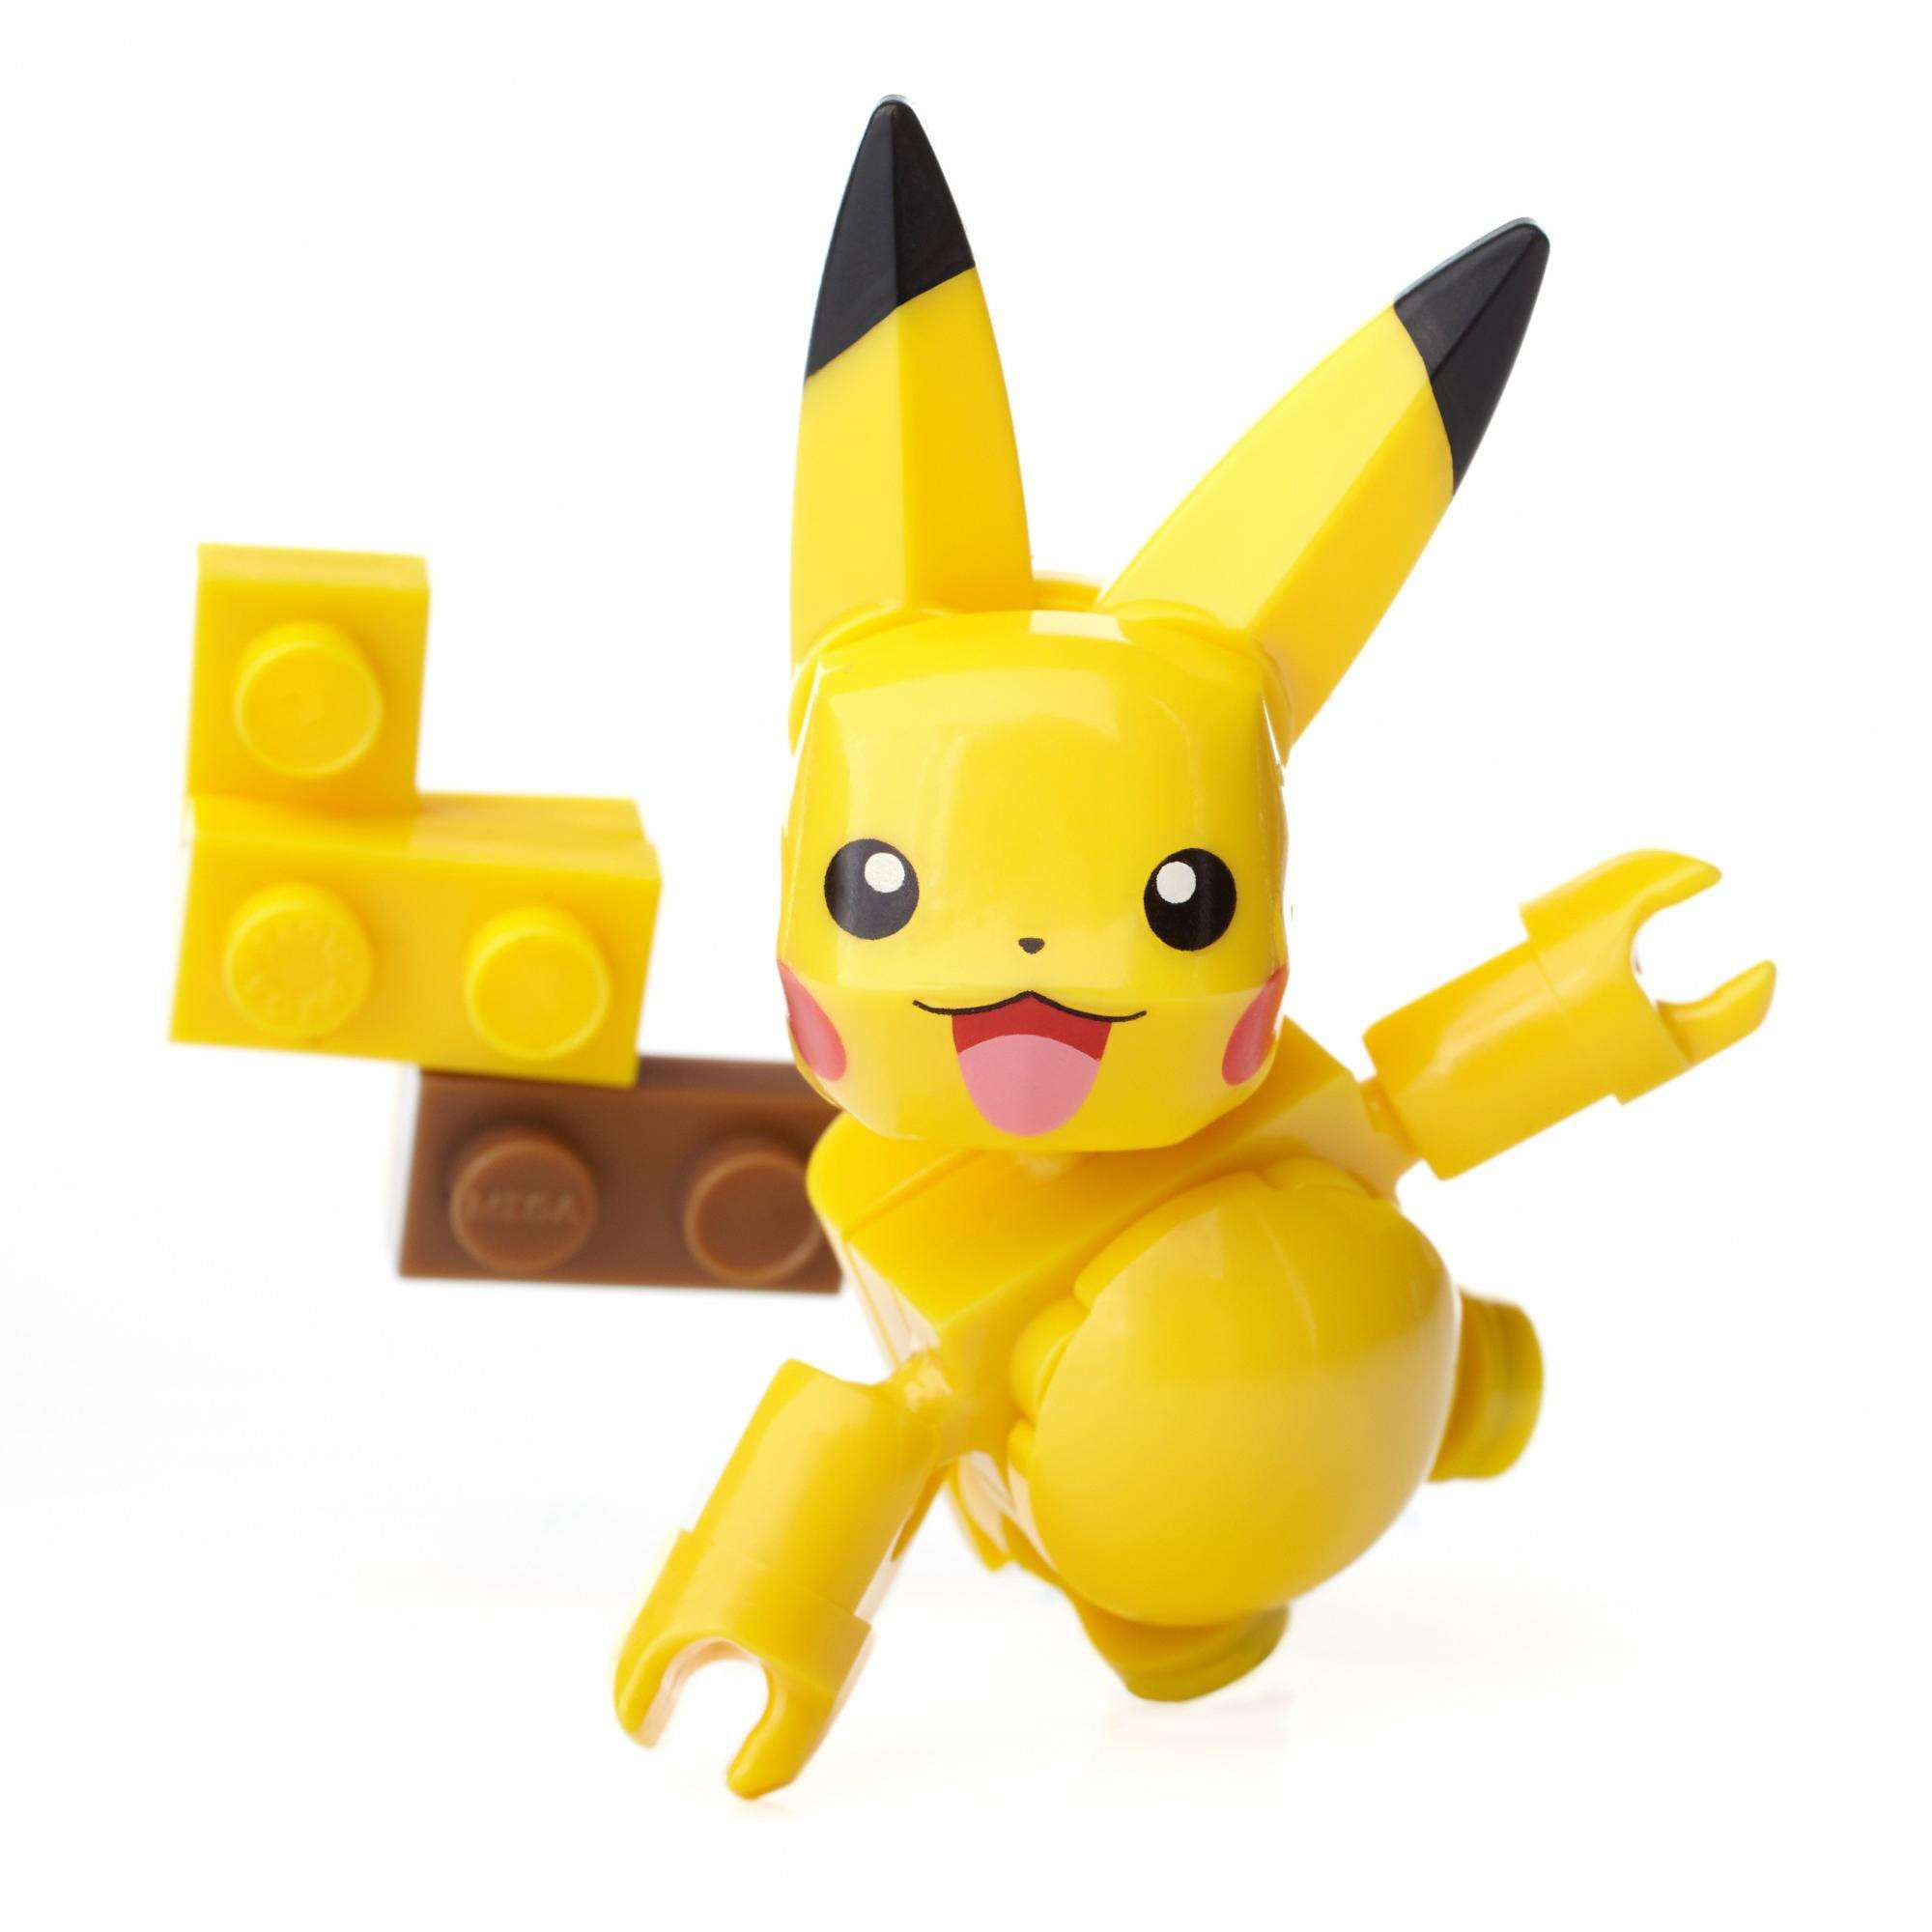 Mega Construx Pokemon Pikachu Figure 